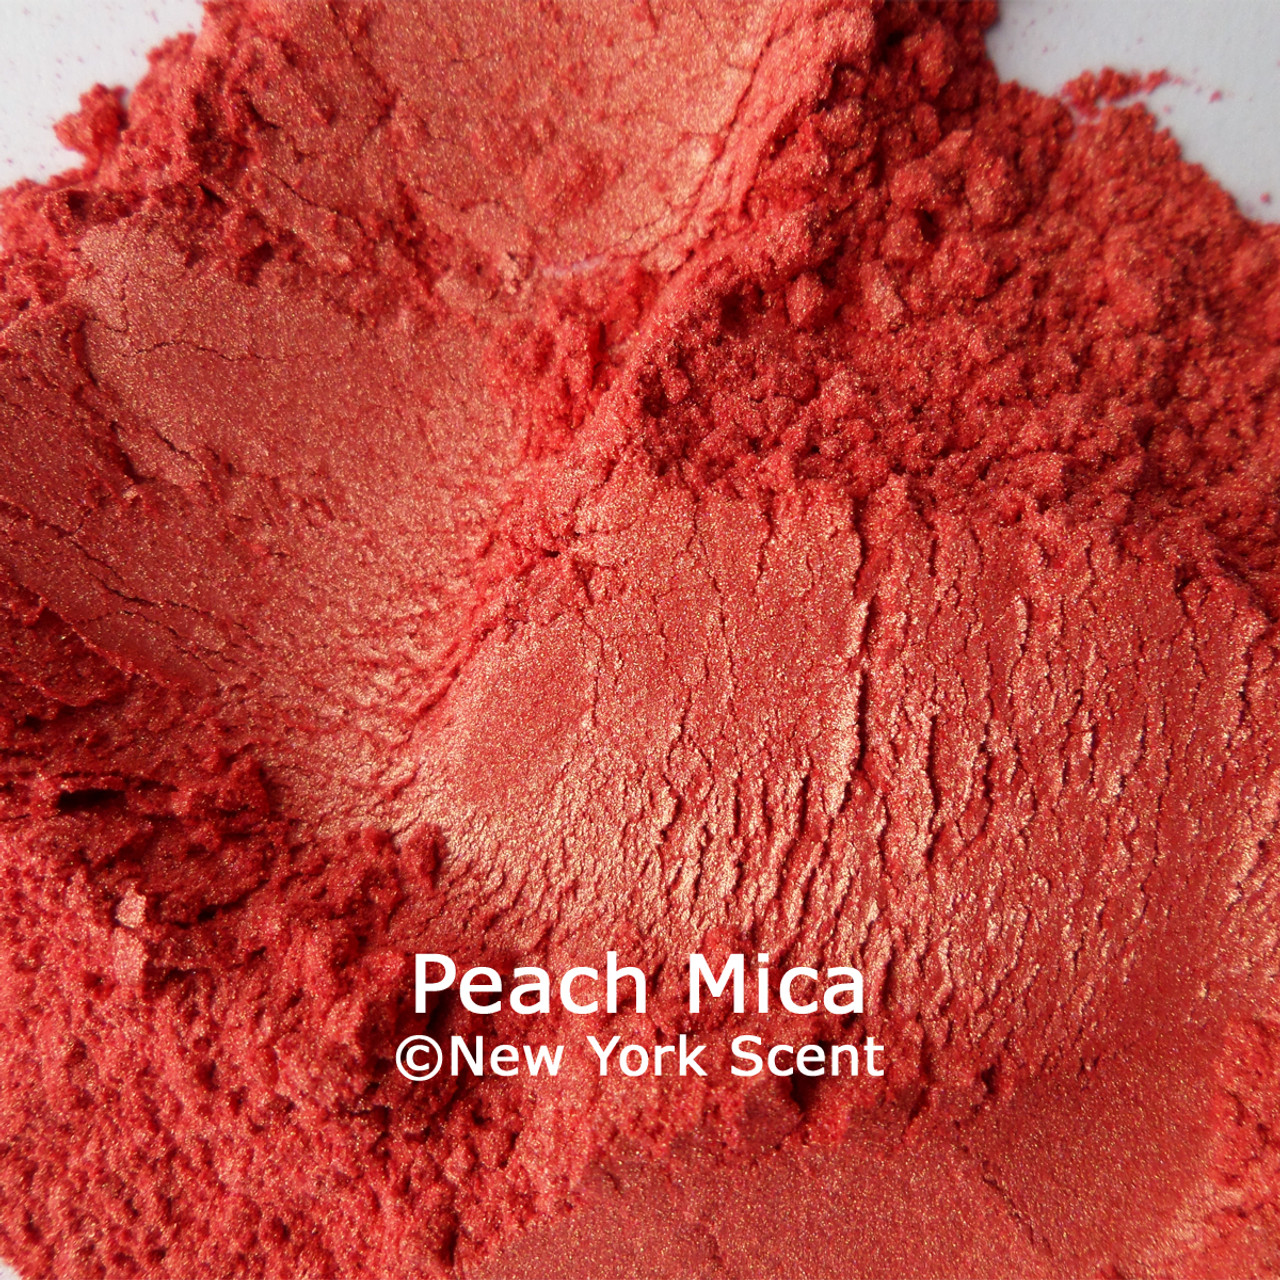 Peach Mica Soap Colorant - New York Scent